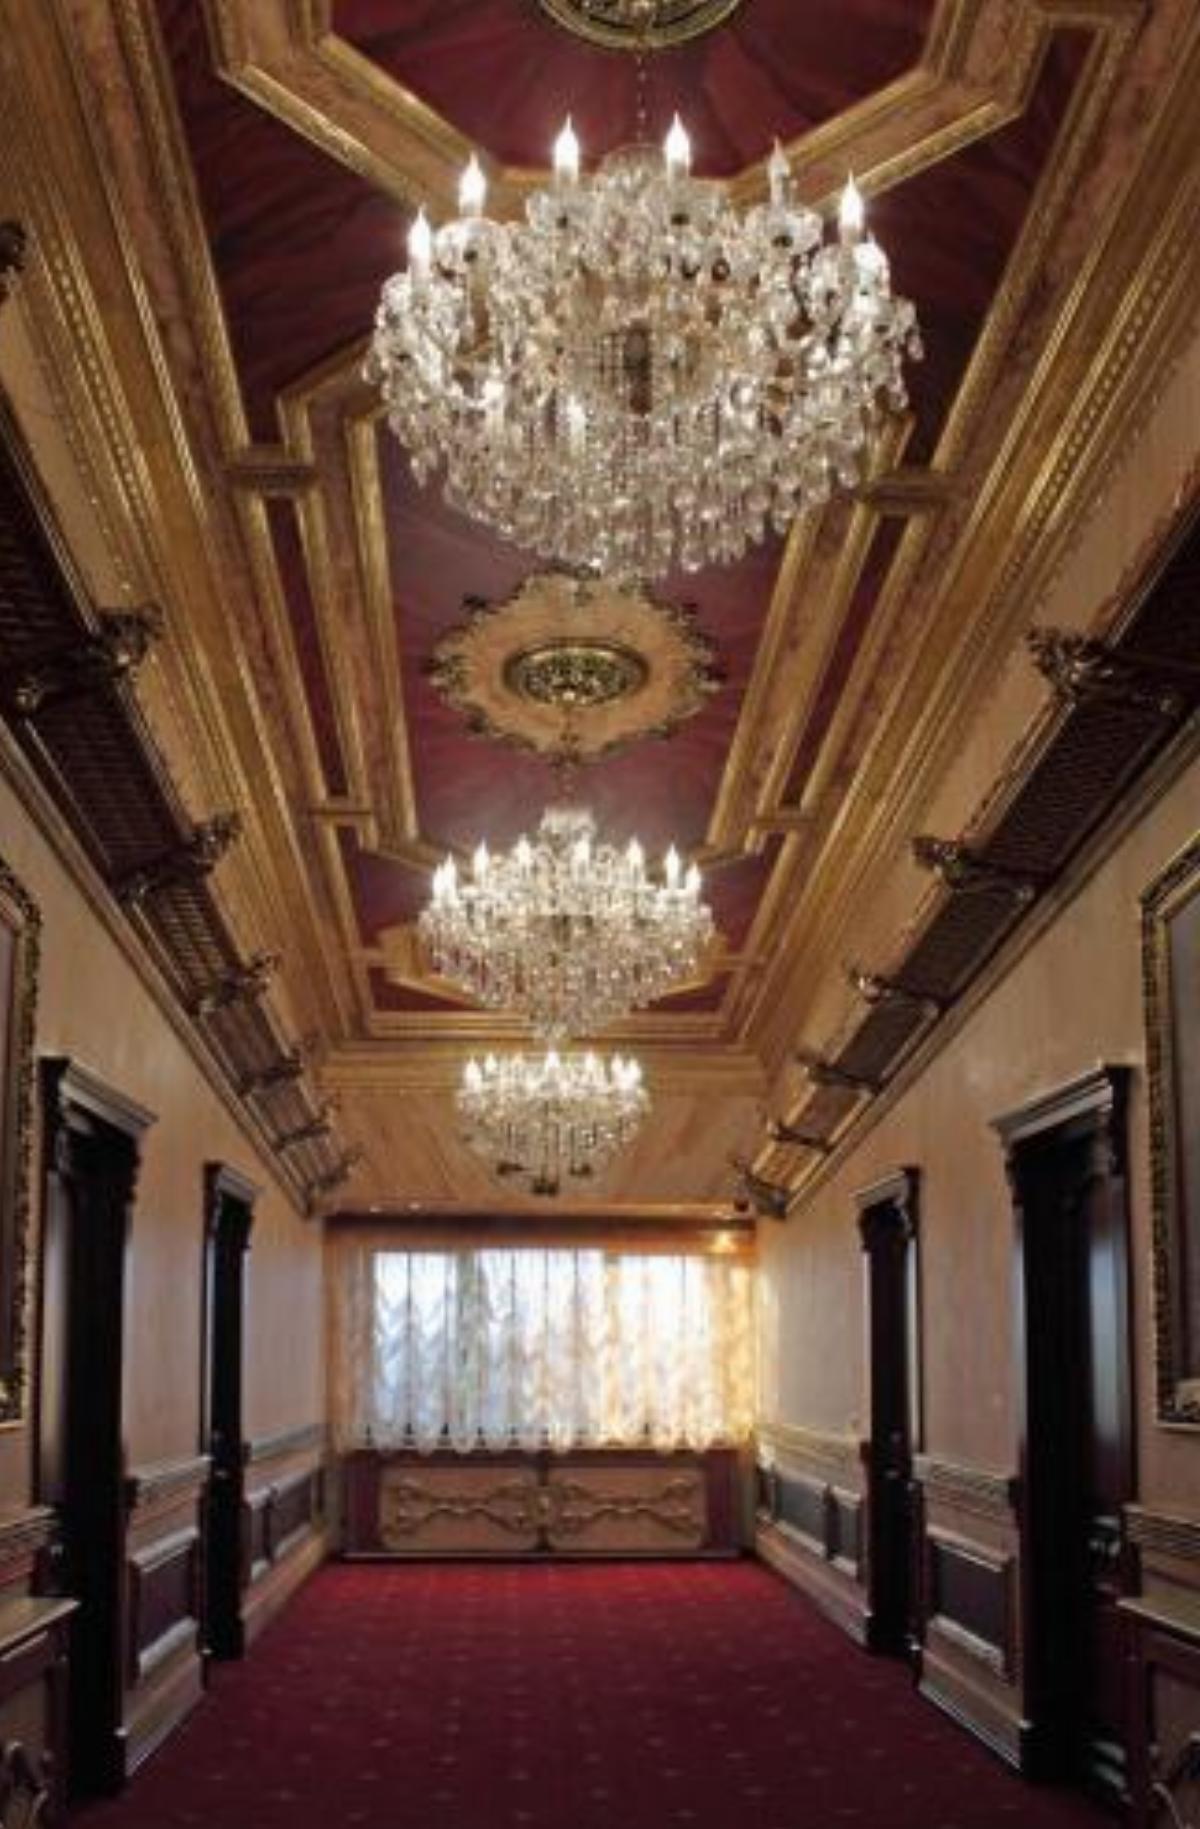 Alexandrapol Palace Hotel Hotel Gyumri Armenia